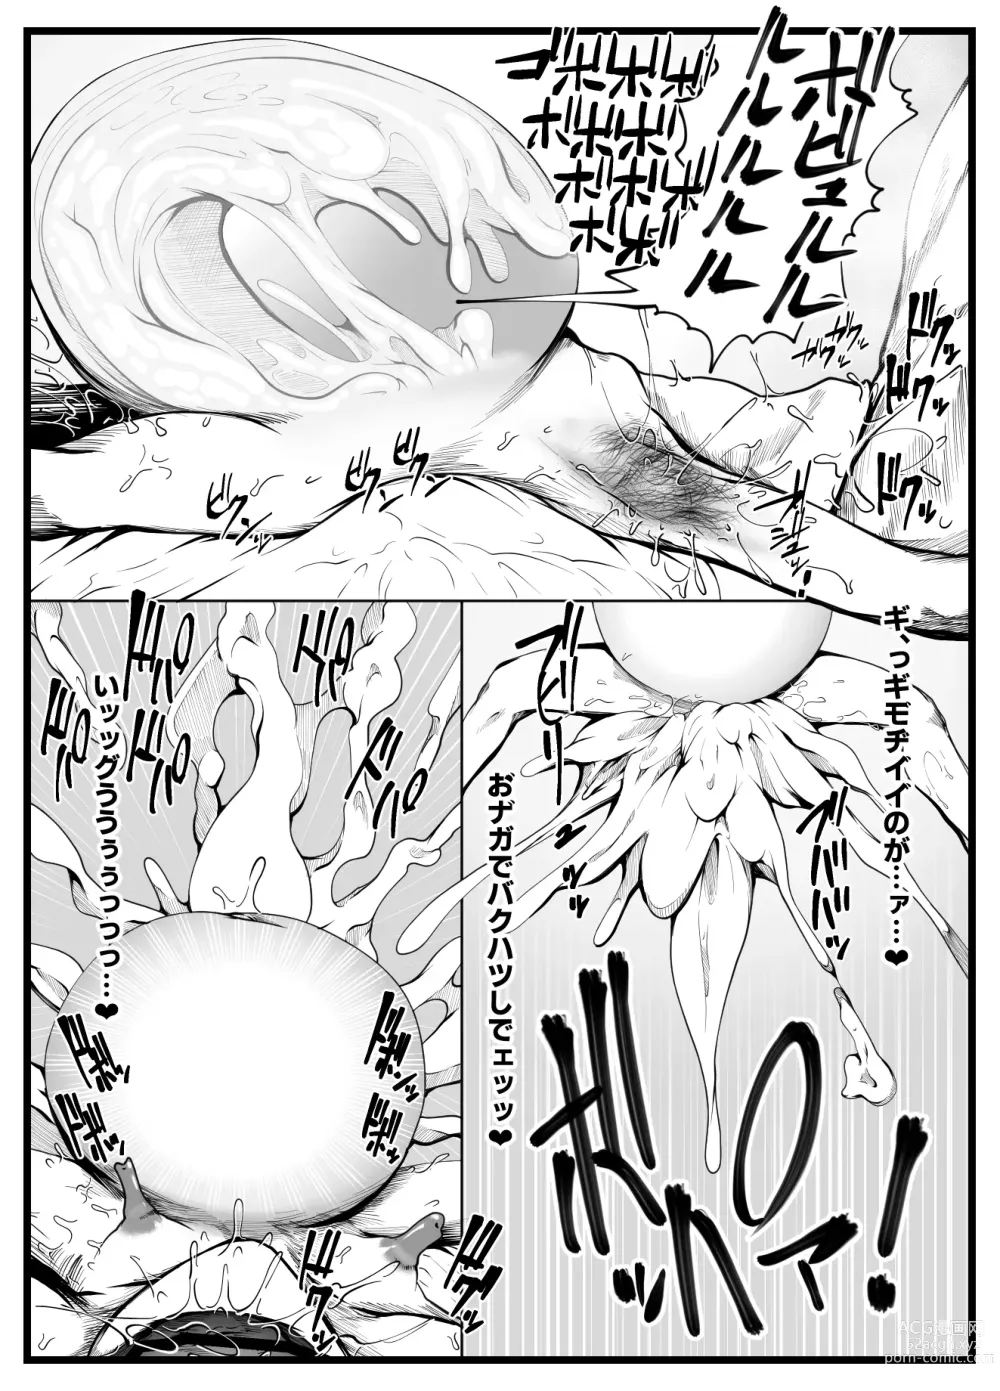 Page 24 of doujinshi Wakijiru Kanojo no Gokubuto Nodoketsu Kantsuu Shabaku Wakige Ban